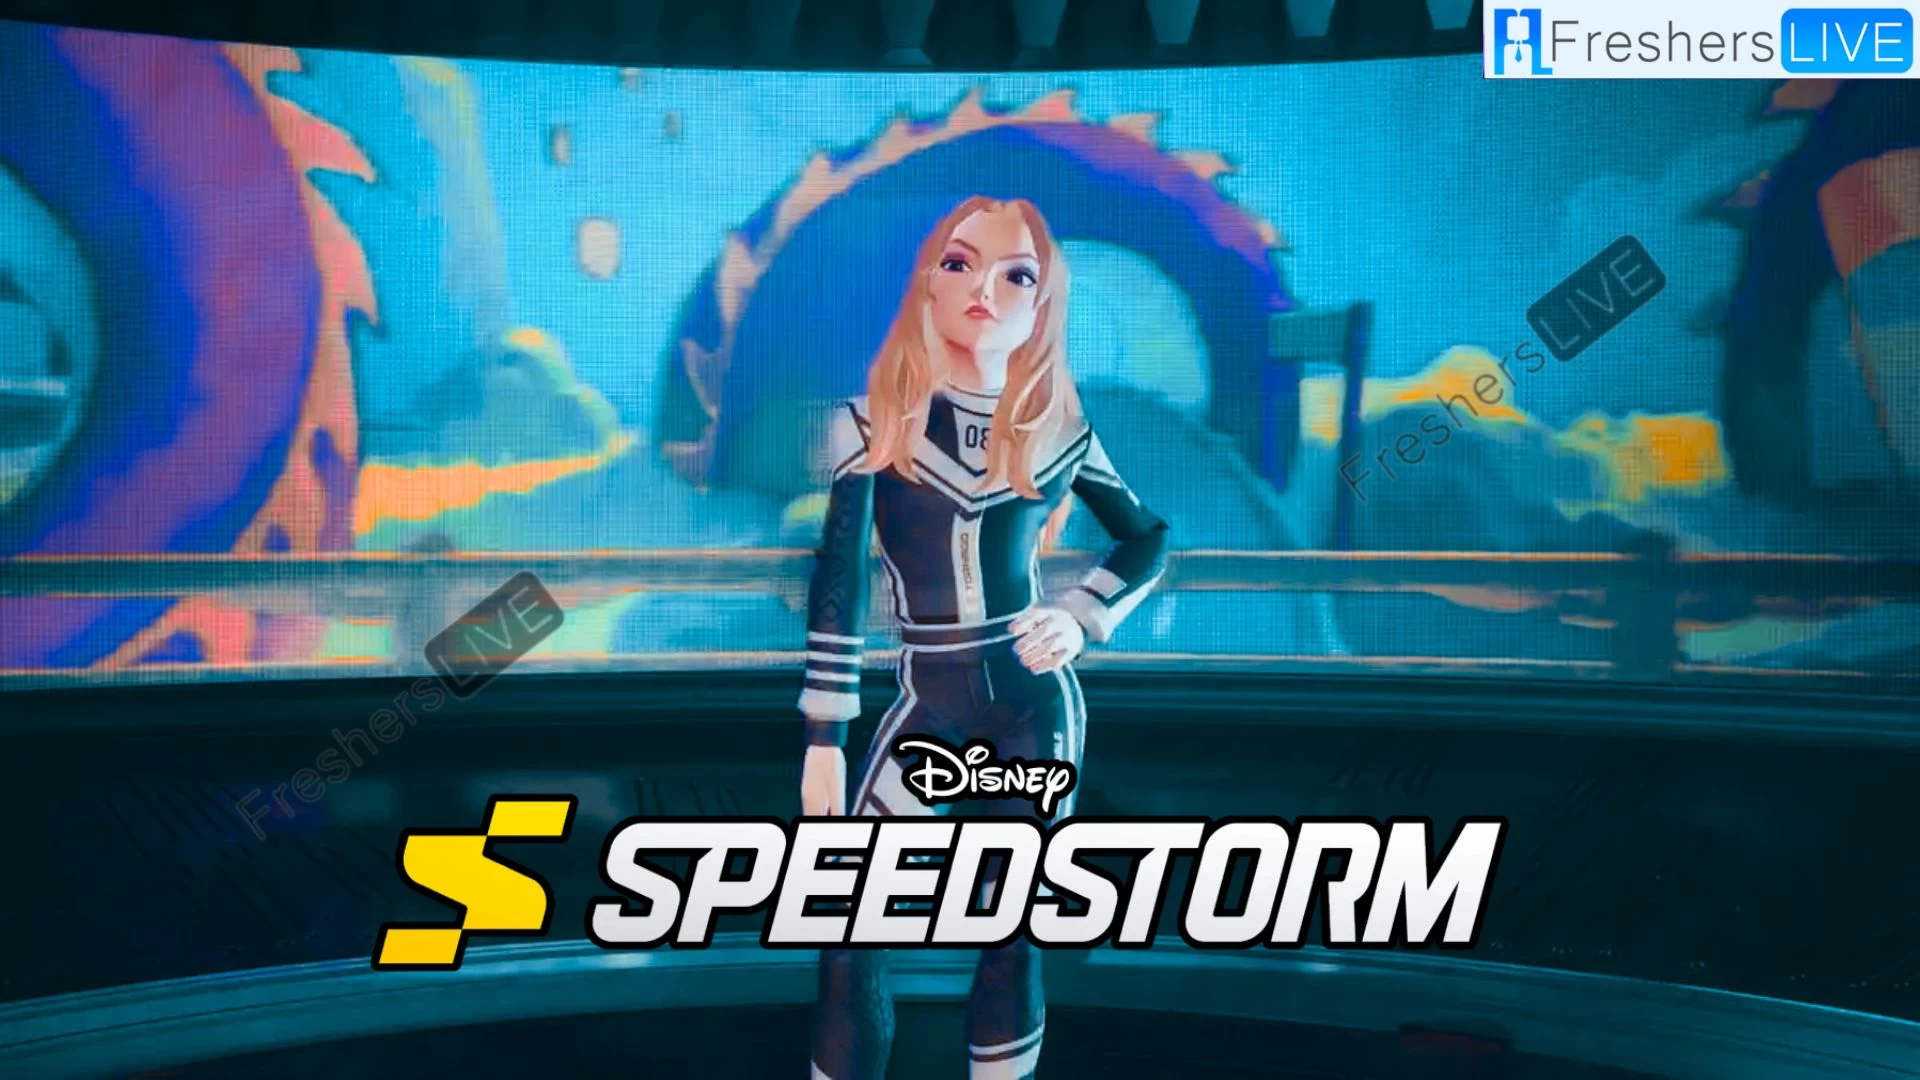 Disney Speedstorm Twitch Drops, How to Get Disney Speedstorm Twitch Drops?